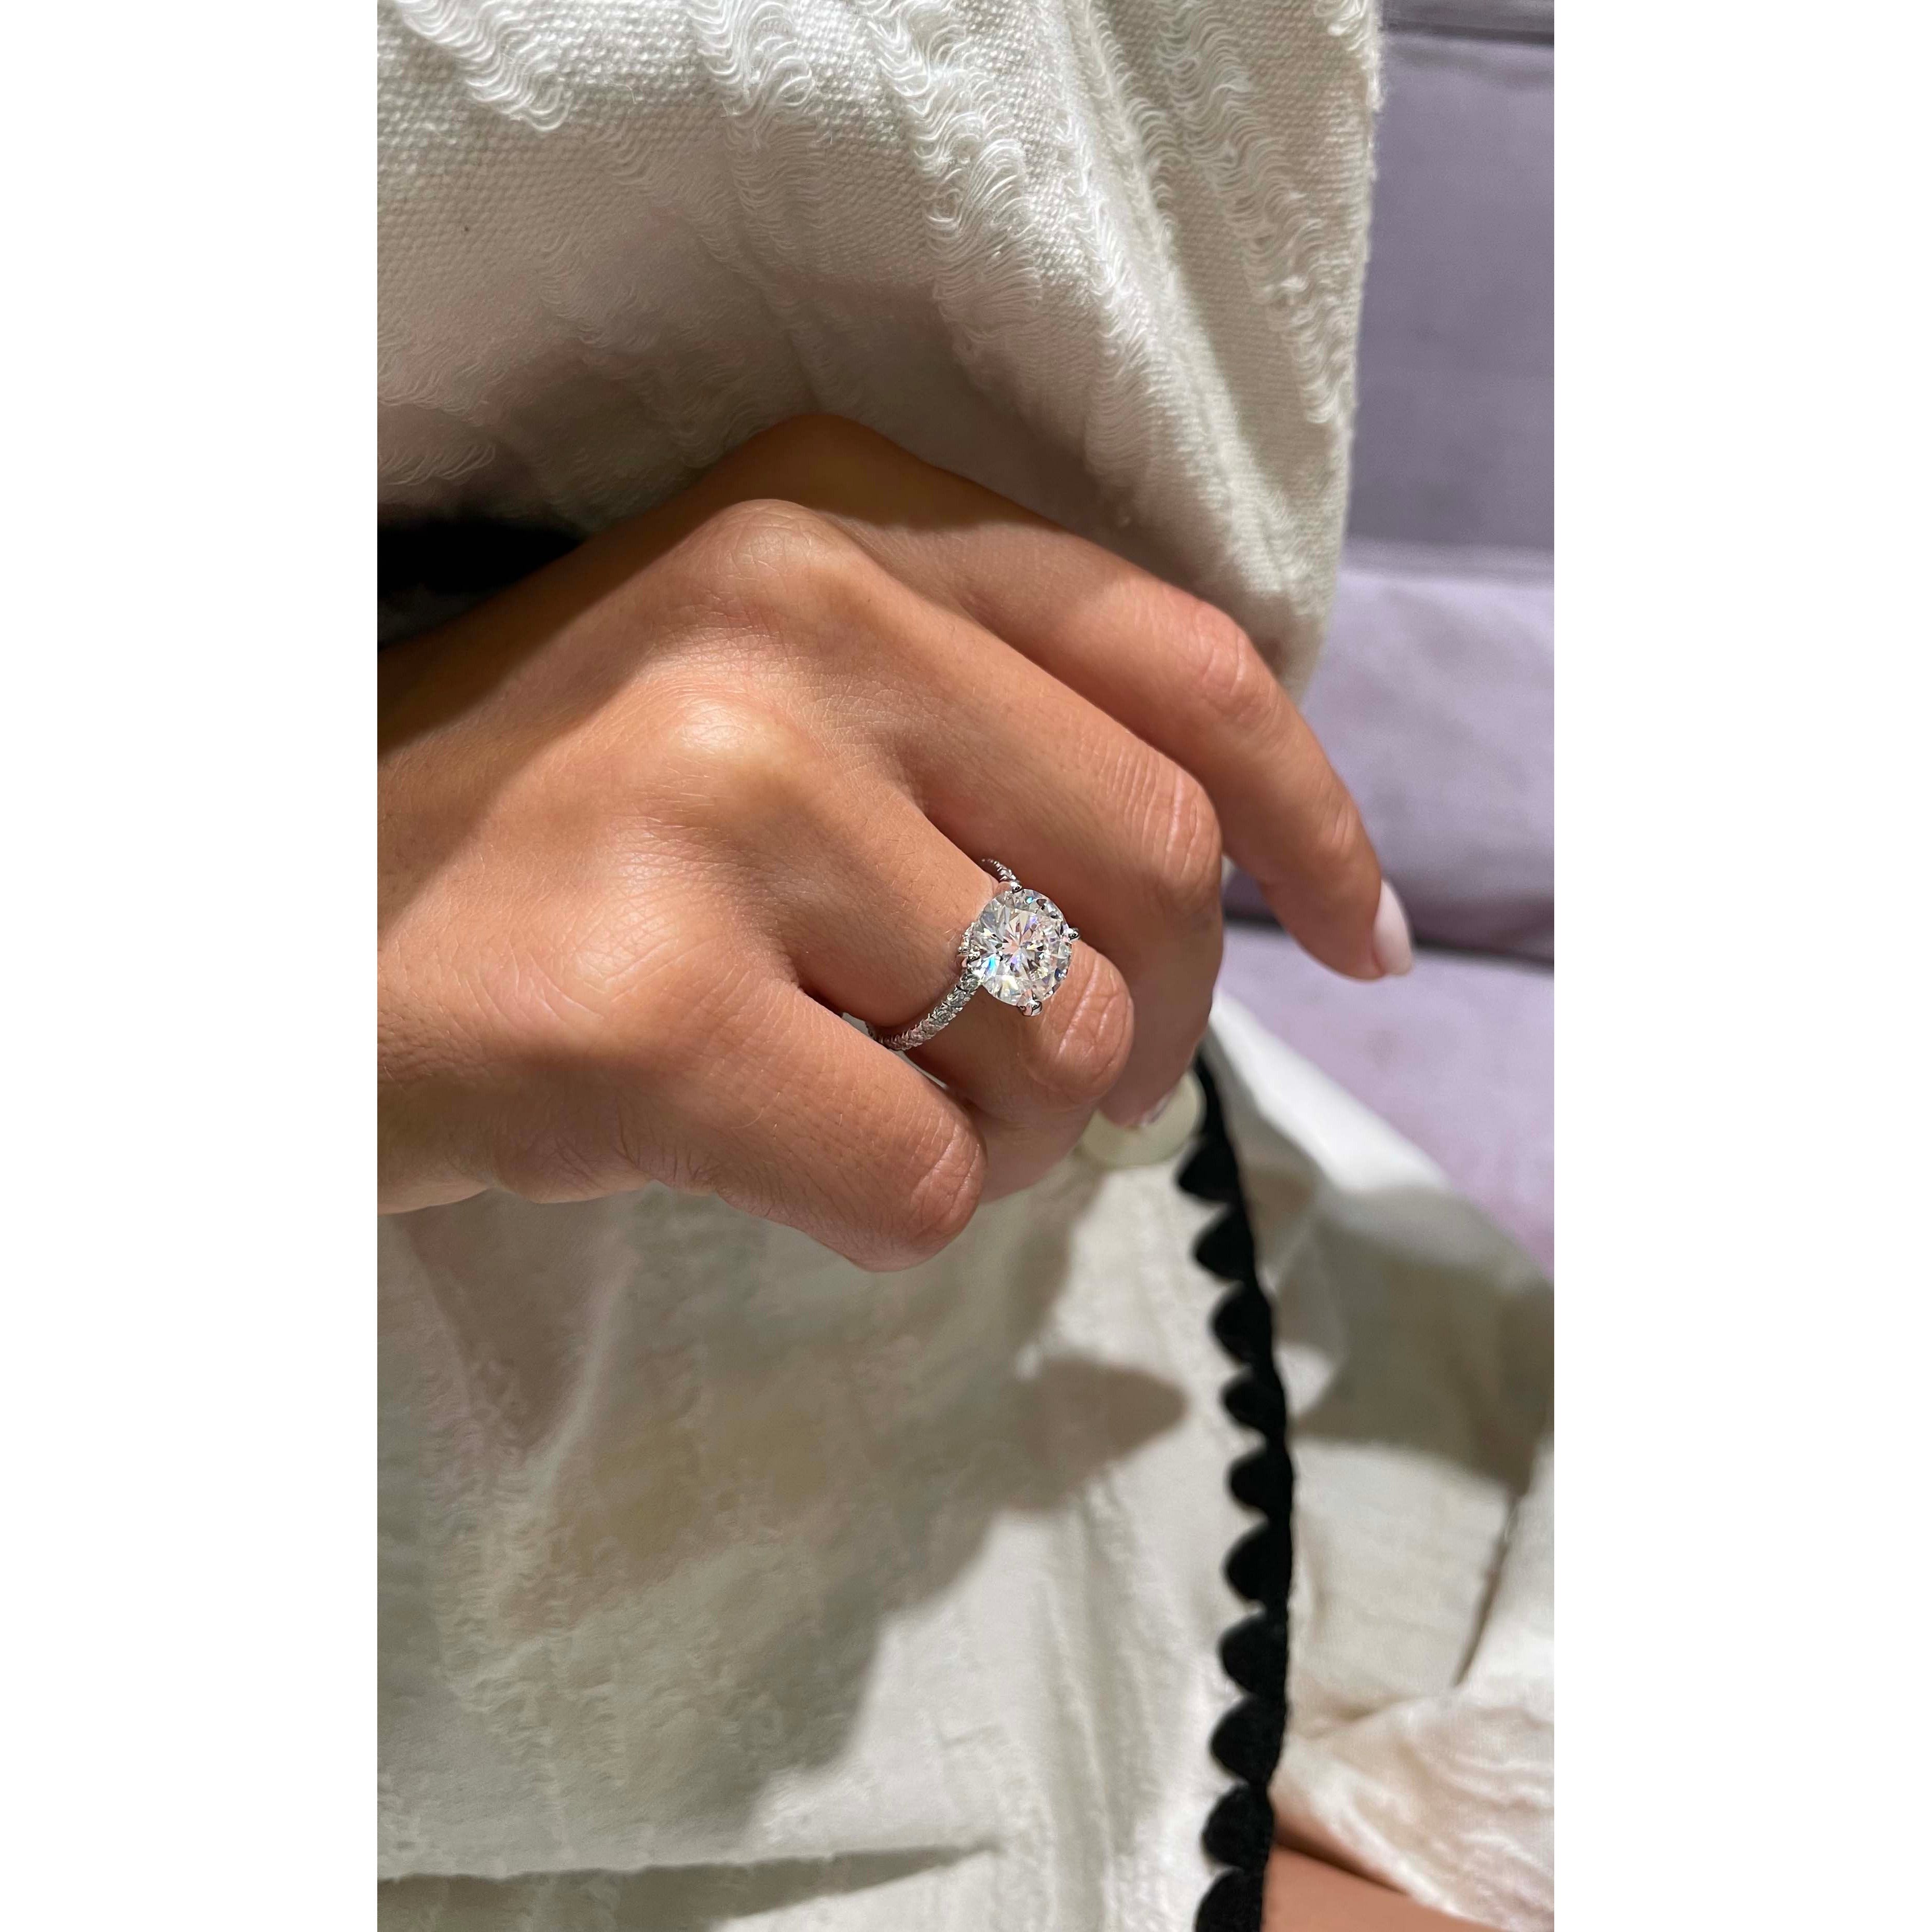 Eleanor Moissanite & Diamonds Ring   (3.5 Carat) -18K White Gold